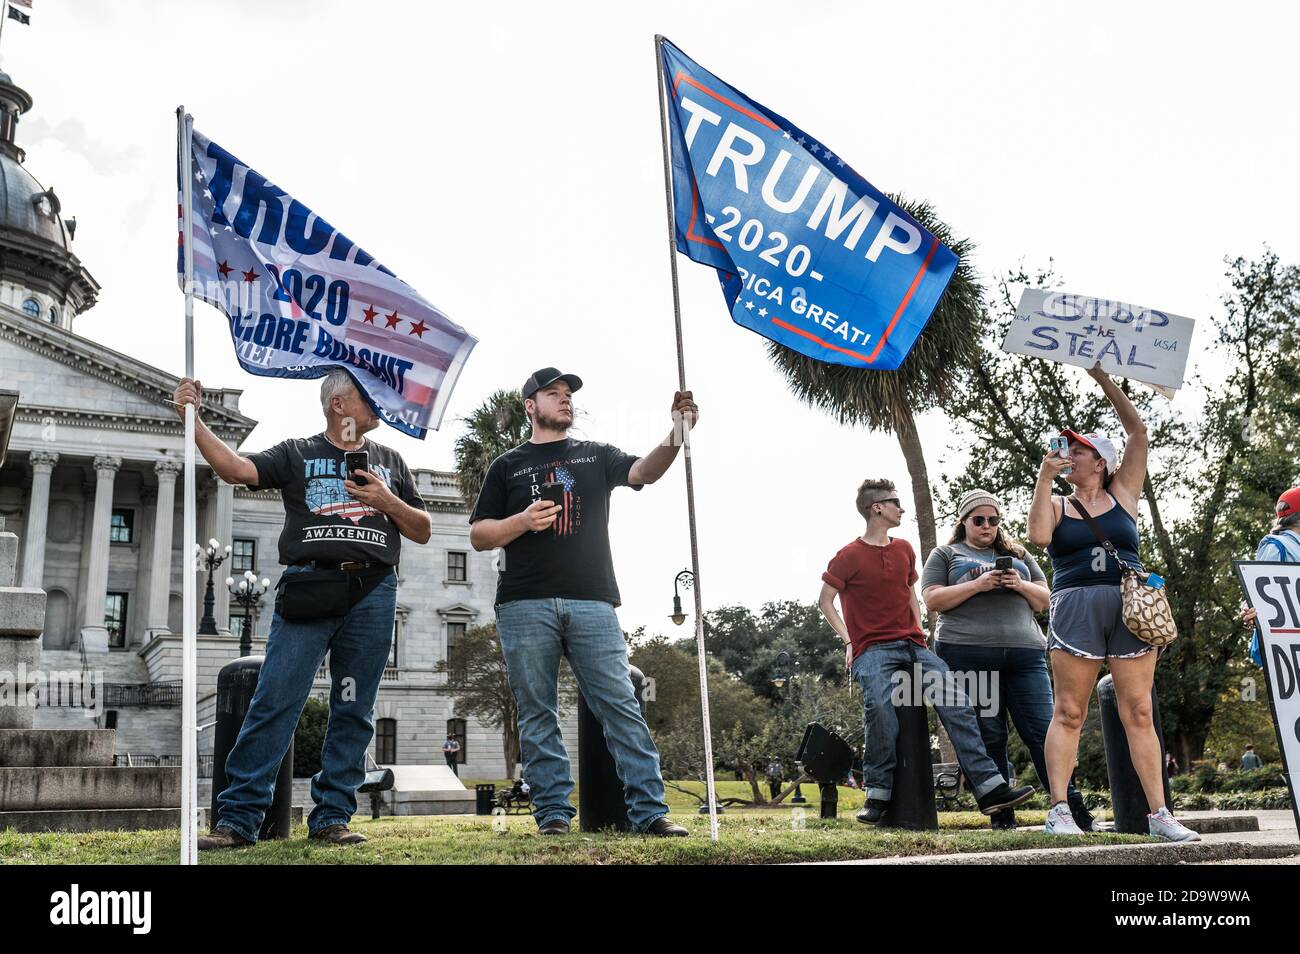 Columbia, South Carolina - USA - 7. November 2020: Donald Trump Anhänger marschieren um das South Carolina State House aus Protest gegen den ehemaligen Vizepräsidenten Joe Biden (D), der die Präsidentschaftsnominierung von 2020 gegen Donald Trump gewinnt. Stockfoto